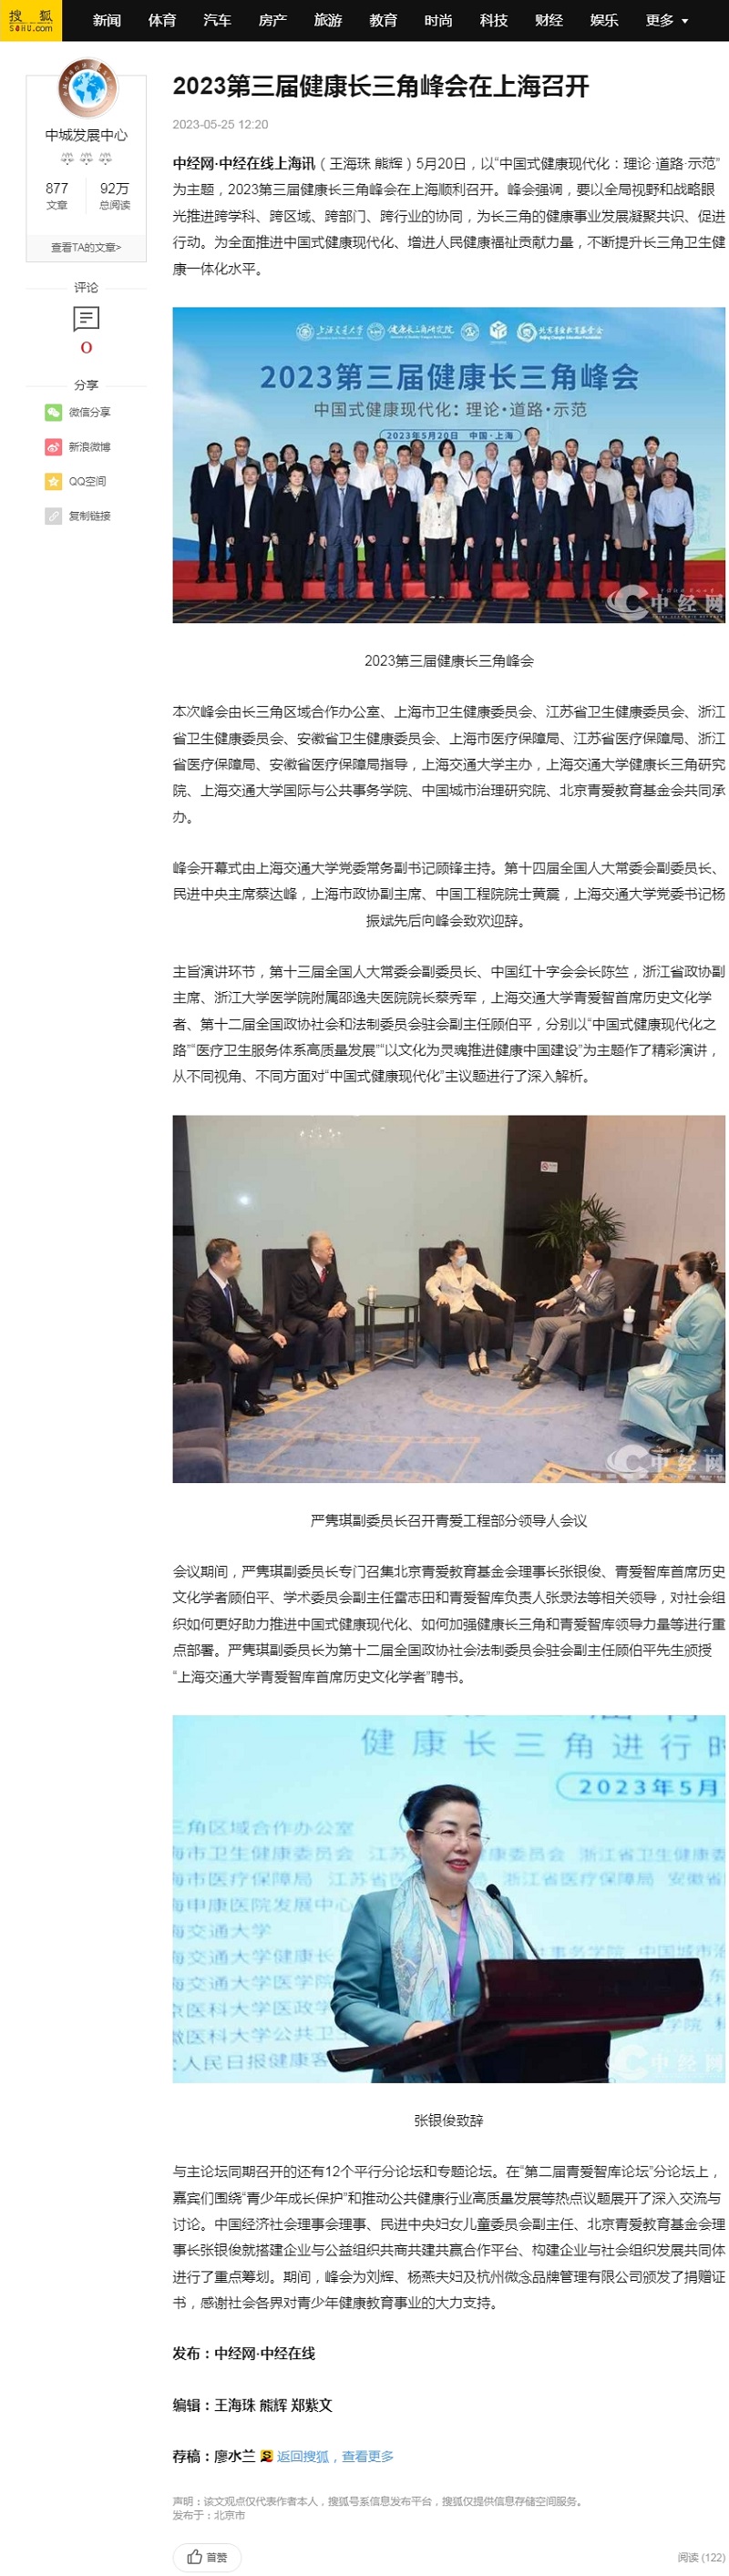 2023第三届健康长三角峰会在上海召开_青爱_现代化_发展